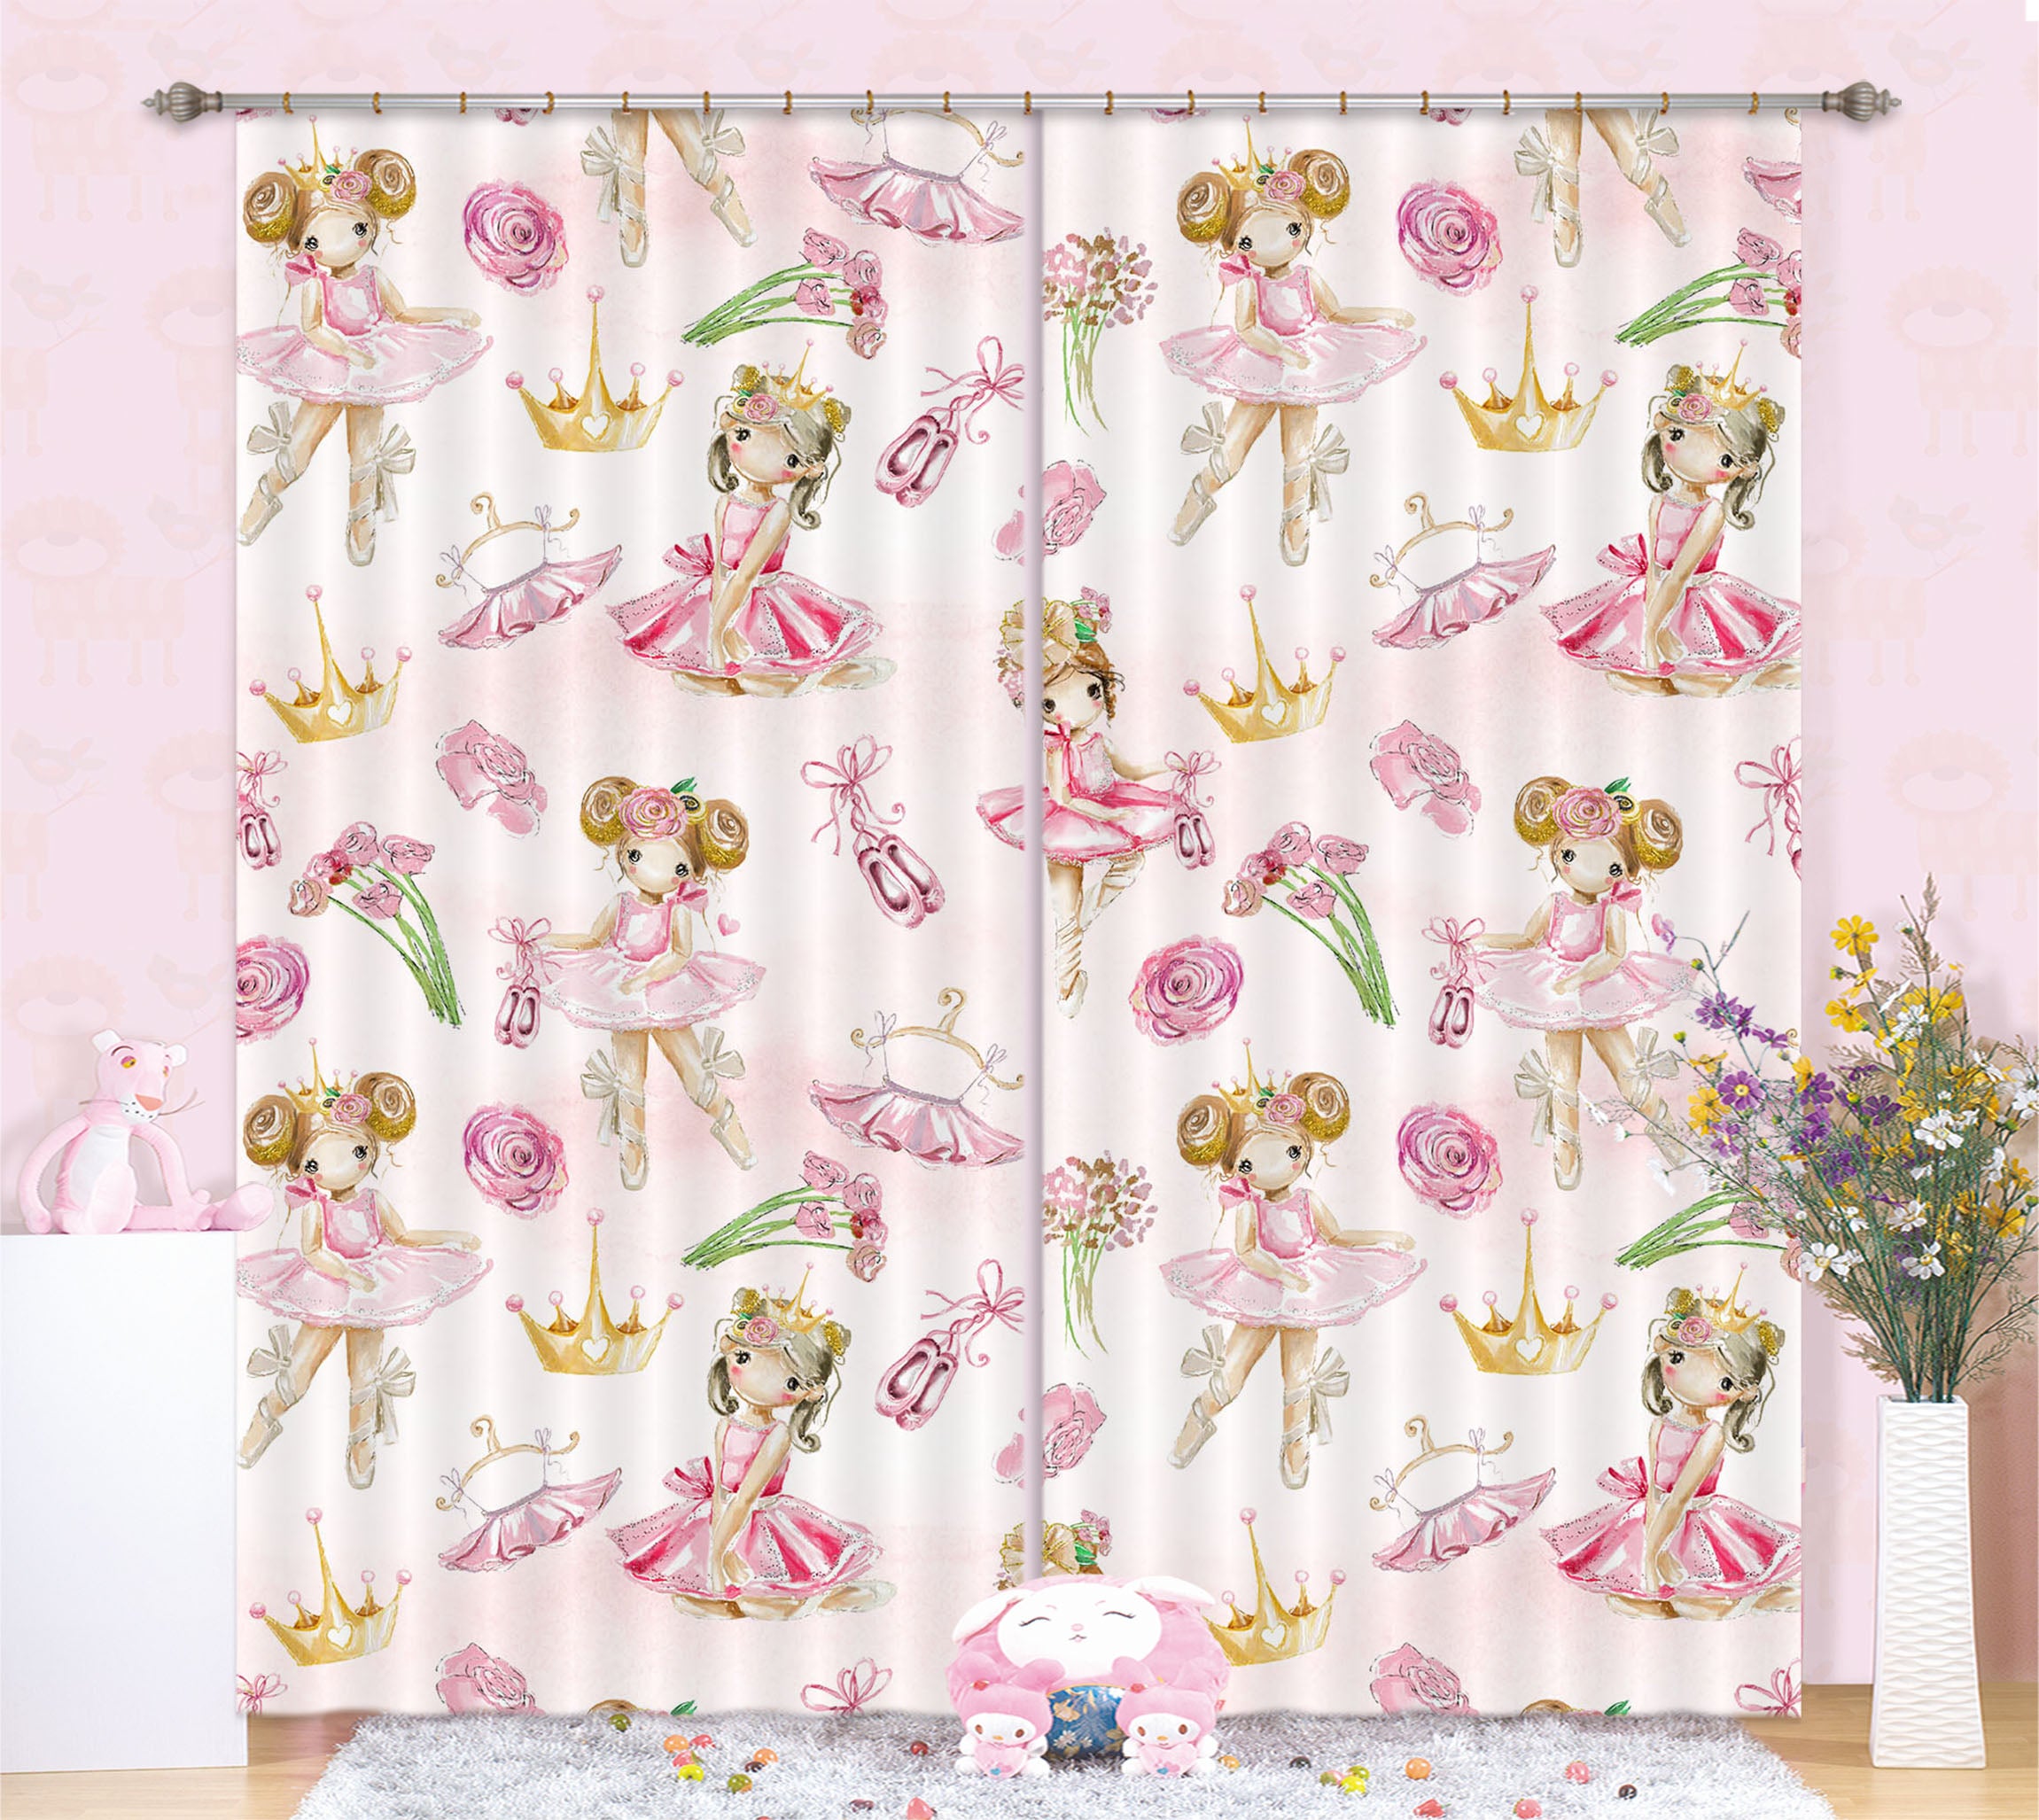 3D Girl Crown Skirt 130 Uta Naumann Curtain Curtains Drapes